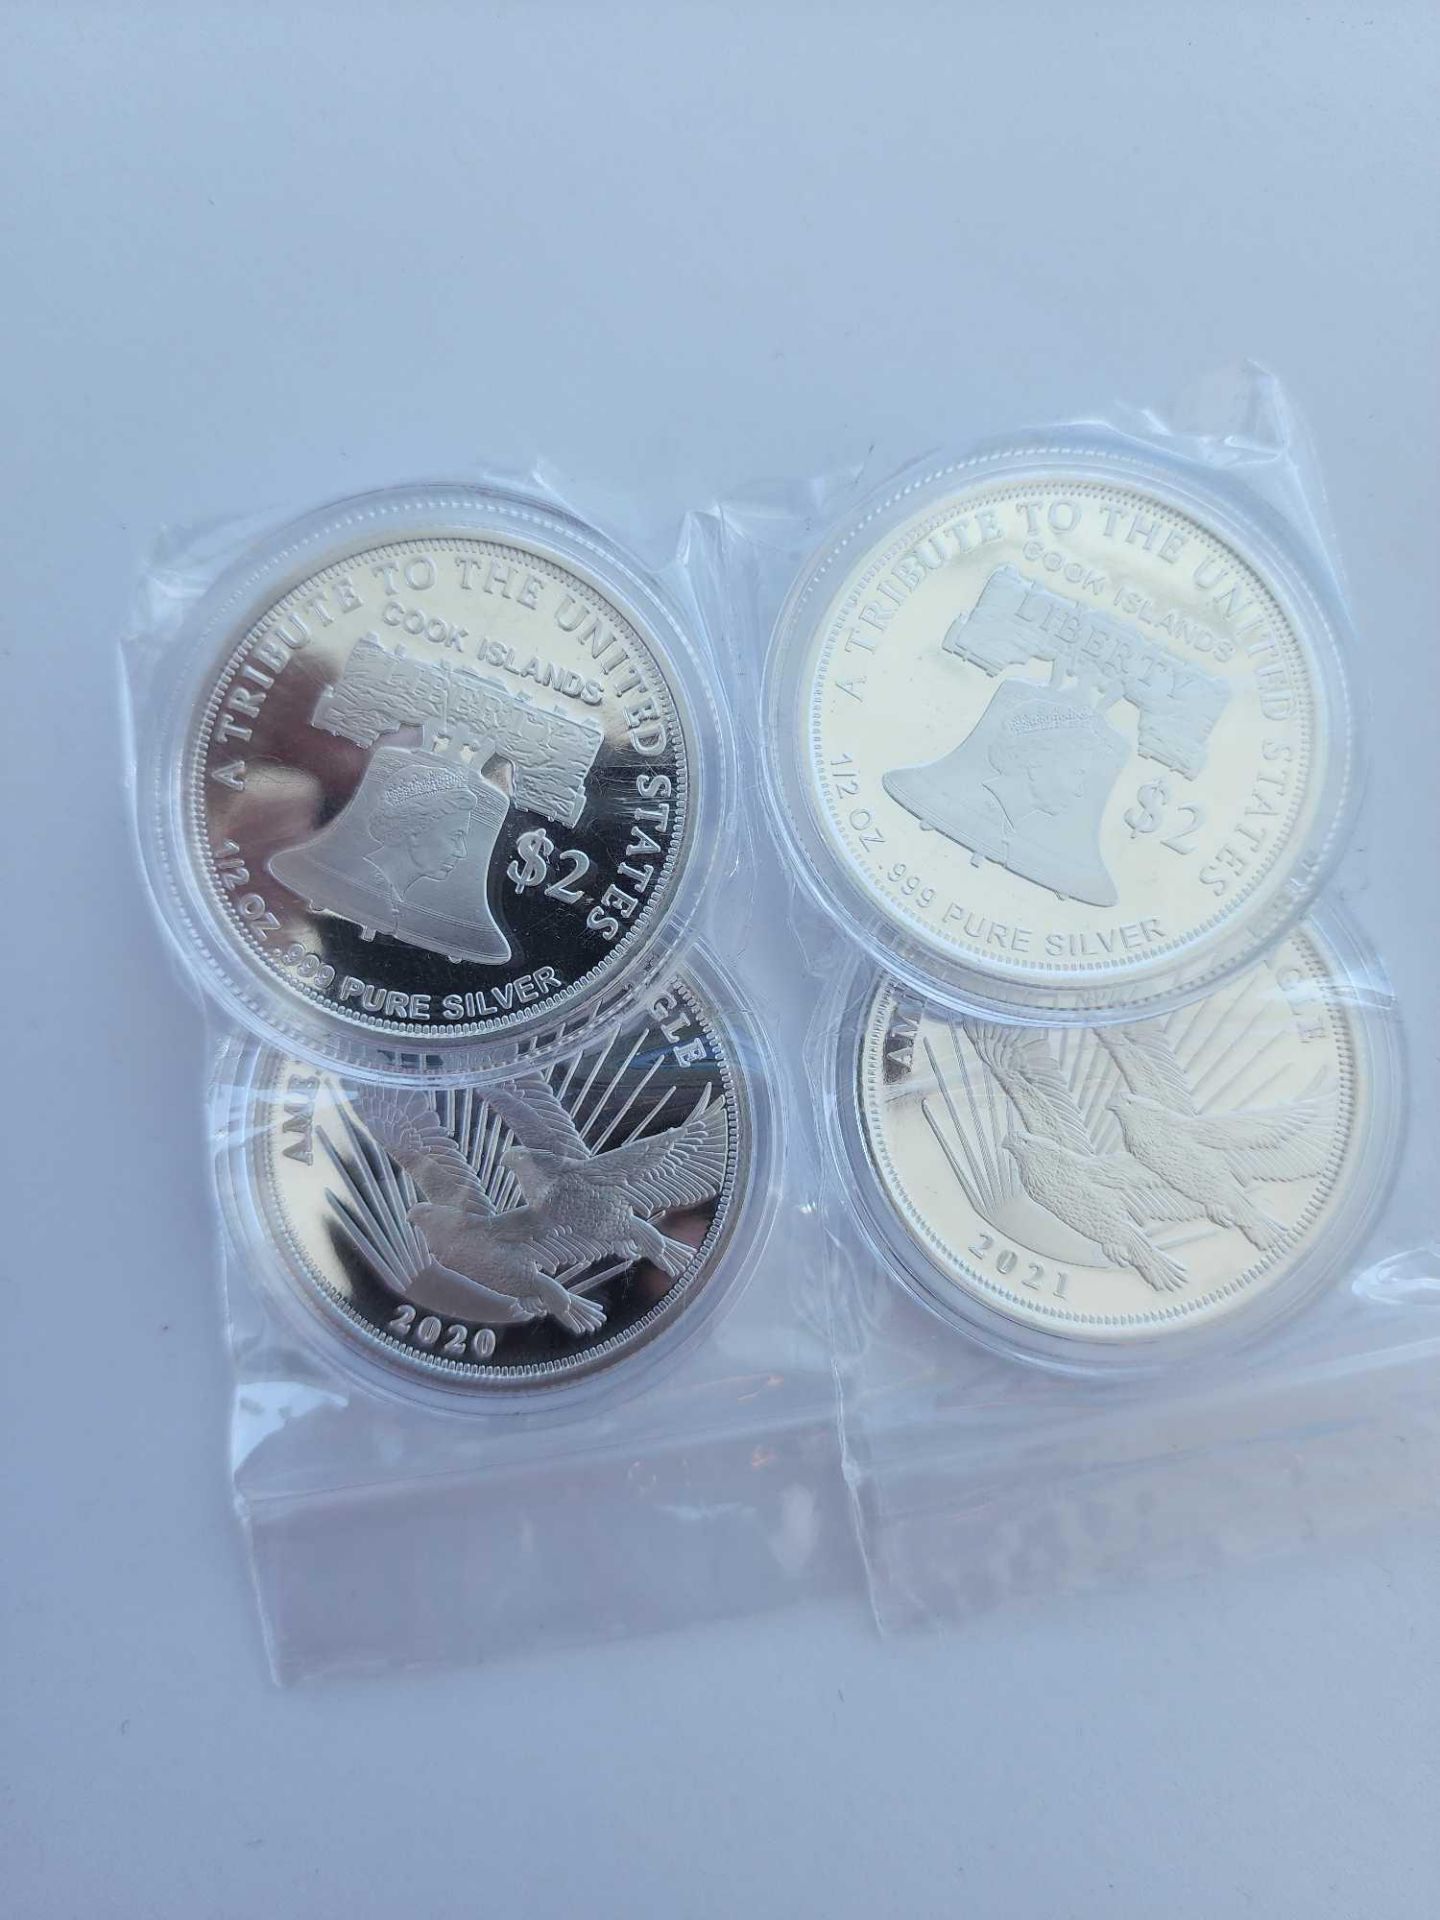 4 1/2 oz Silver Coins (2 oz Silver) - Image 3 of 3